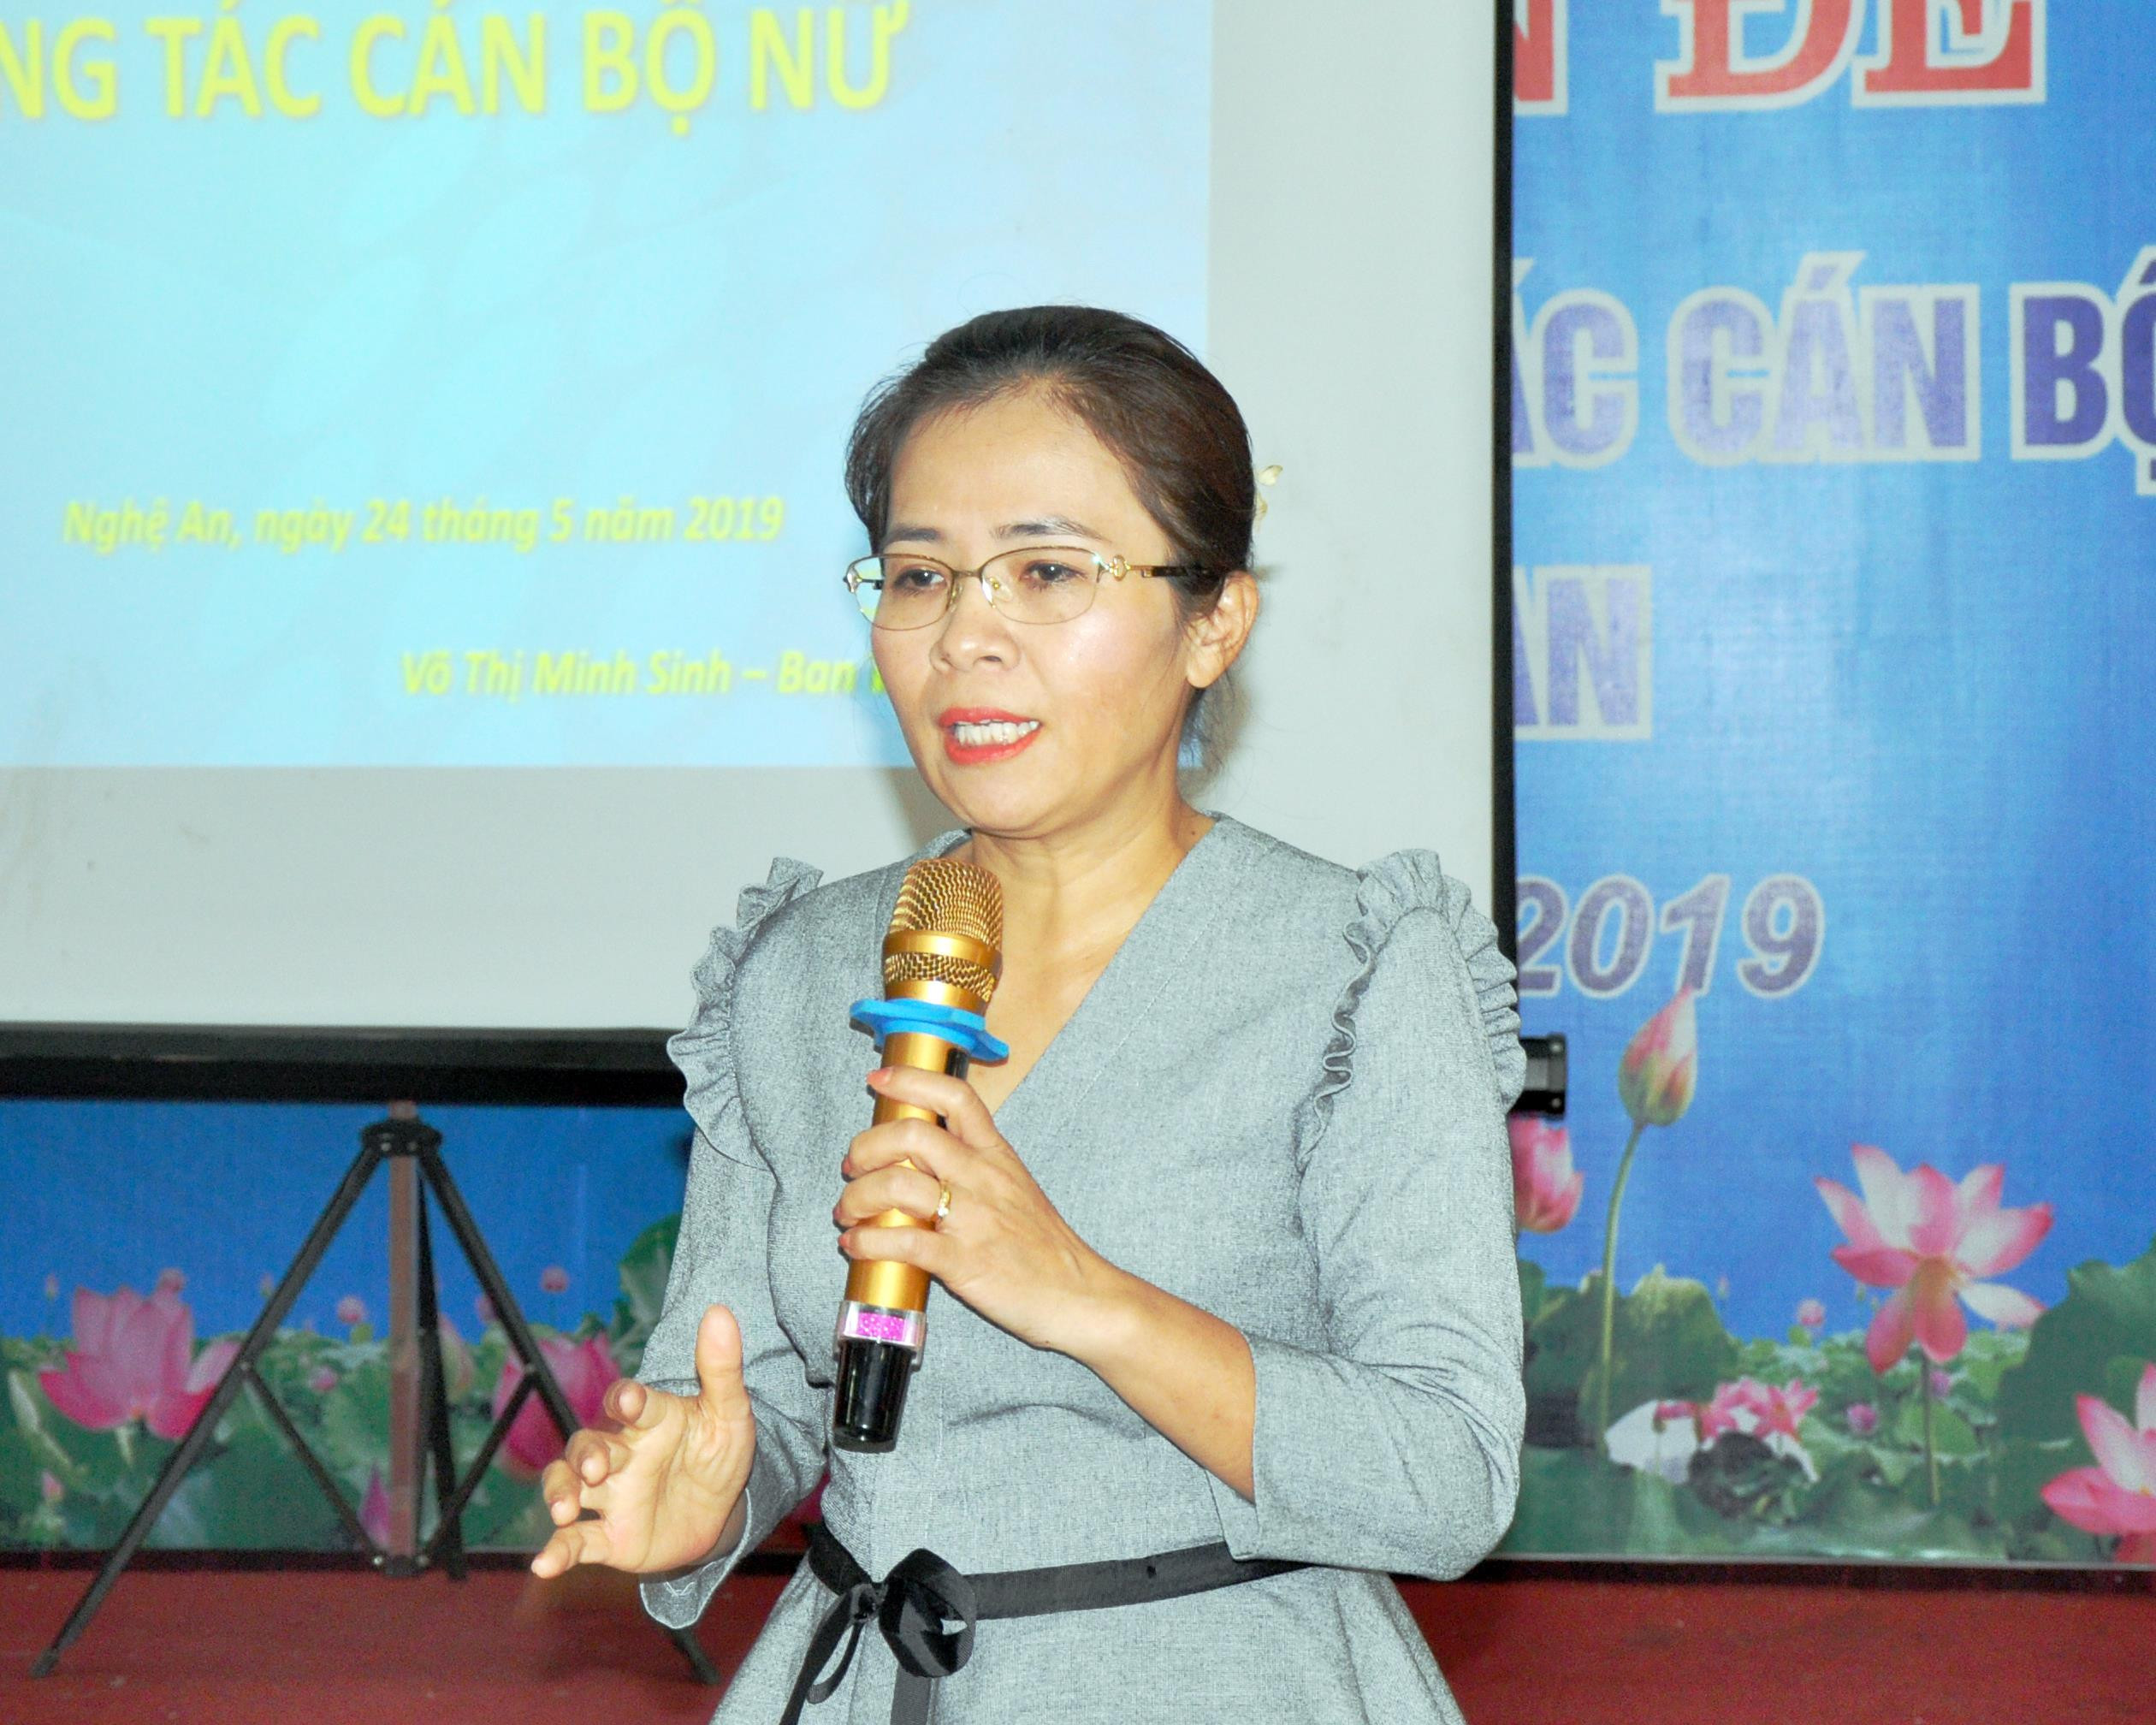 Đồng chí Võ Thị Minh Sinh – Ủy viên BCH Đảng bộ tỉnh, Phó Trưởng Ban Tổ chức Tỉnh ủy chủ trì Hội Nghị. Ảnh: Công Kiên